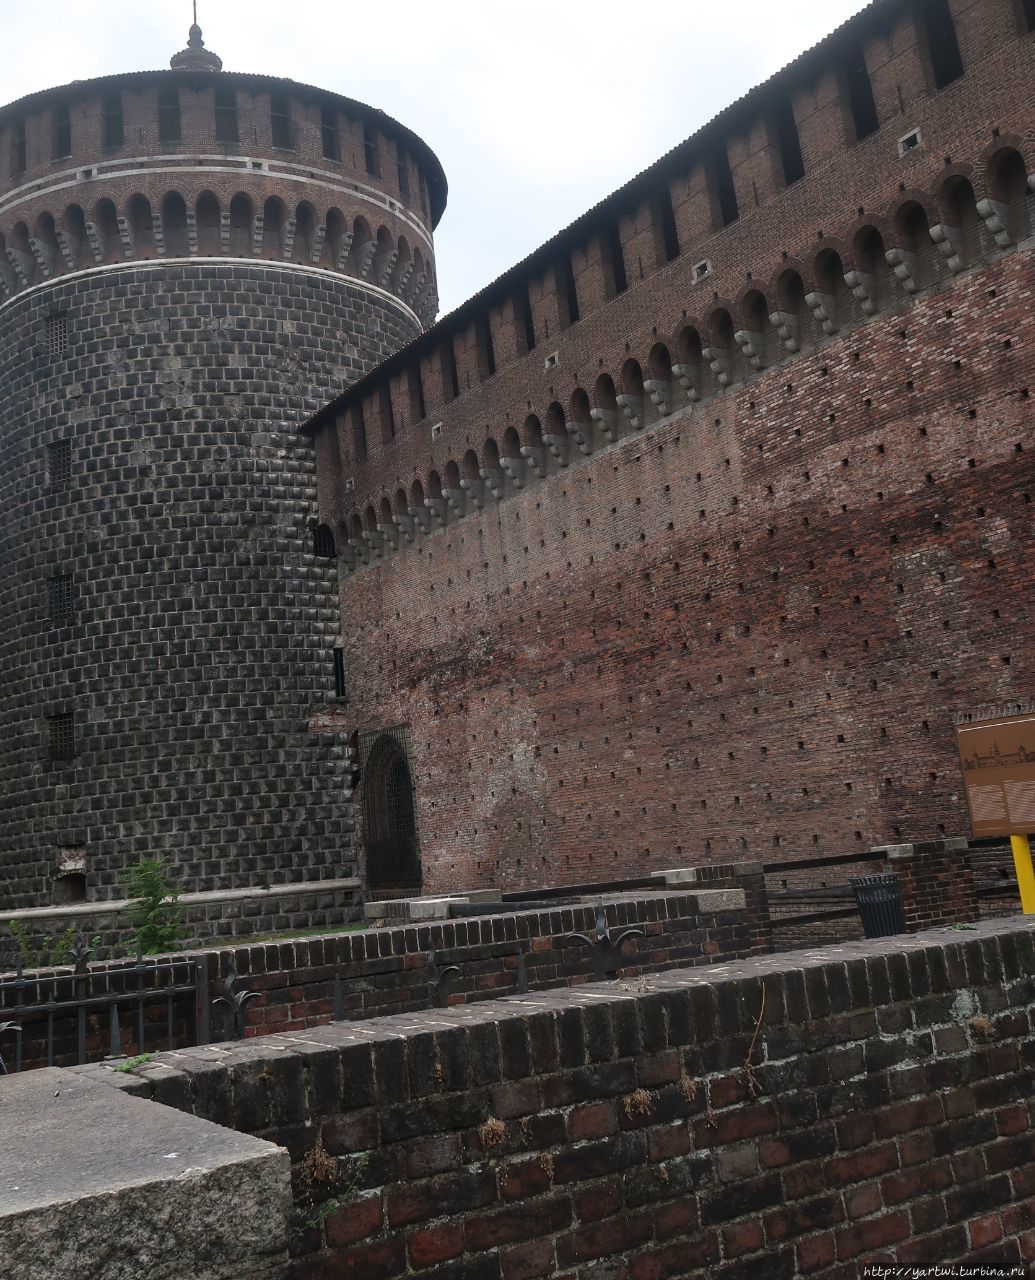 Облик крепости Сфорца взяли за образец миланские архитекторы, работавшие над Московским Кремлем (форма башен и корона венчающих стены зубцов). Милан, Италия